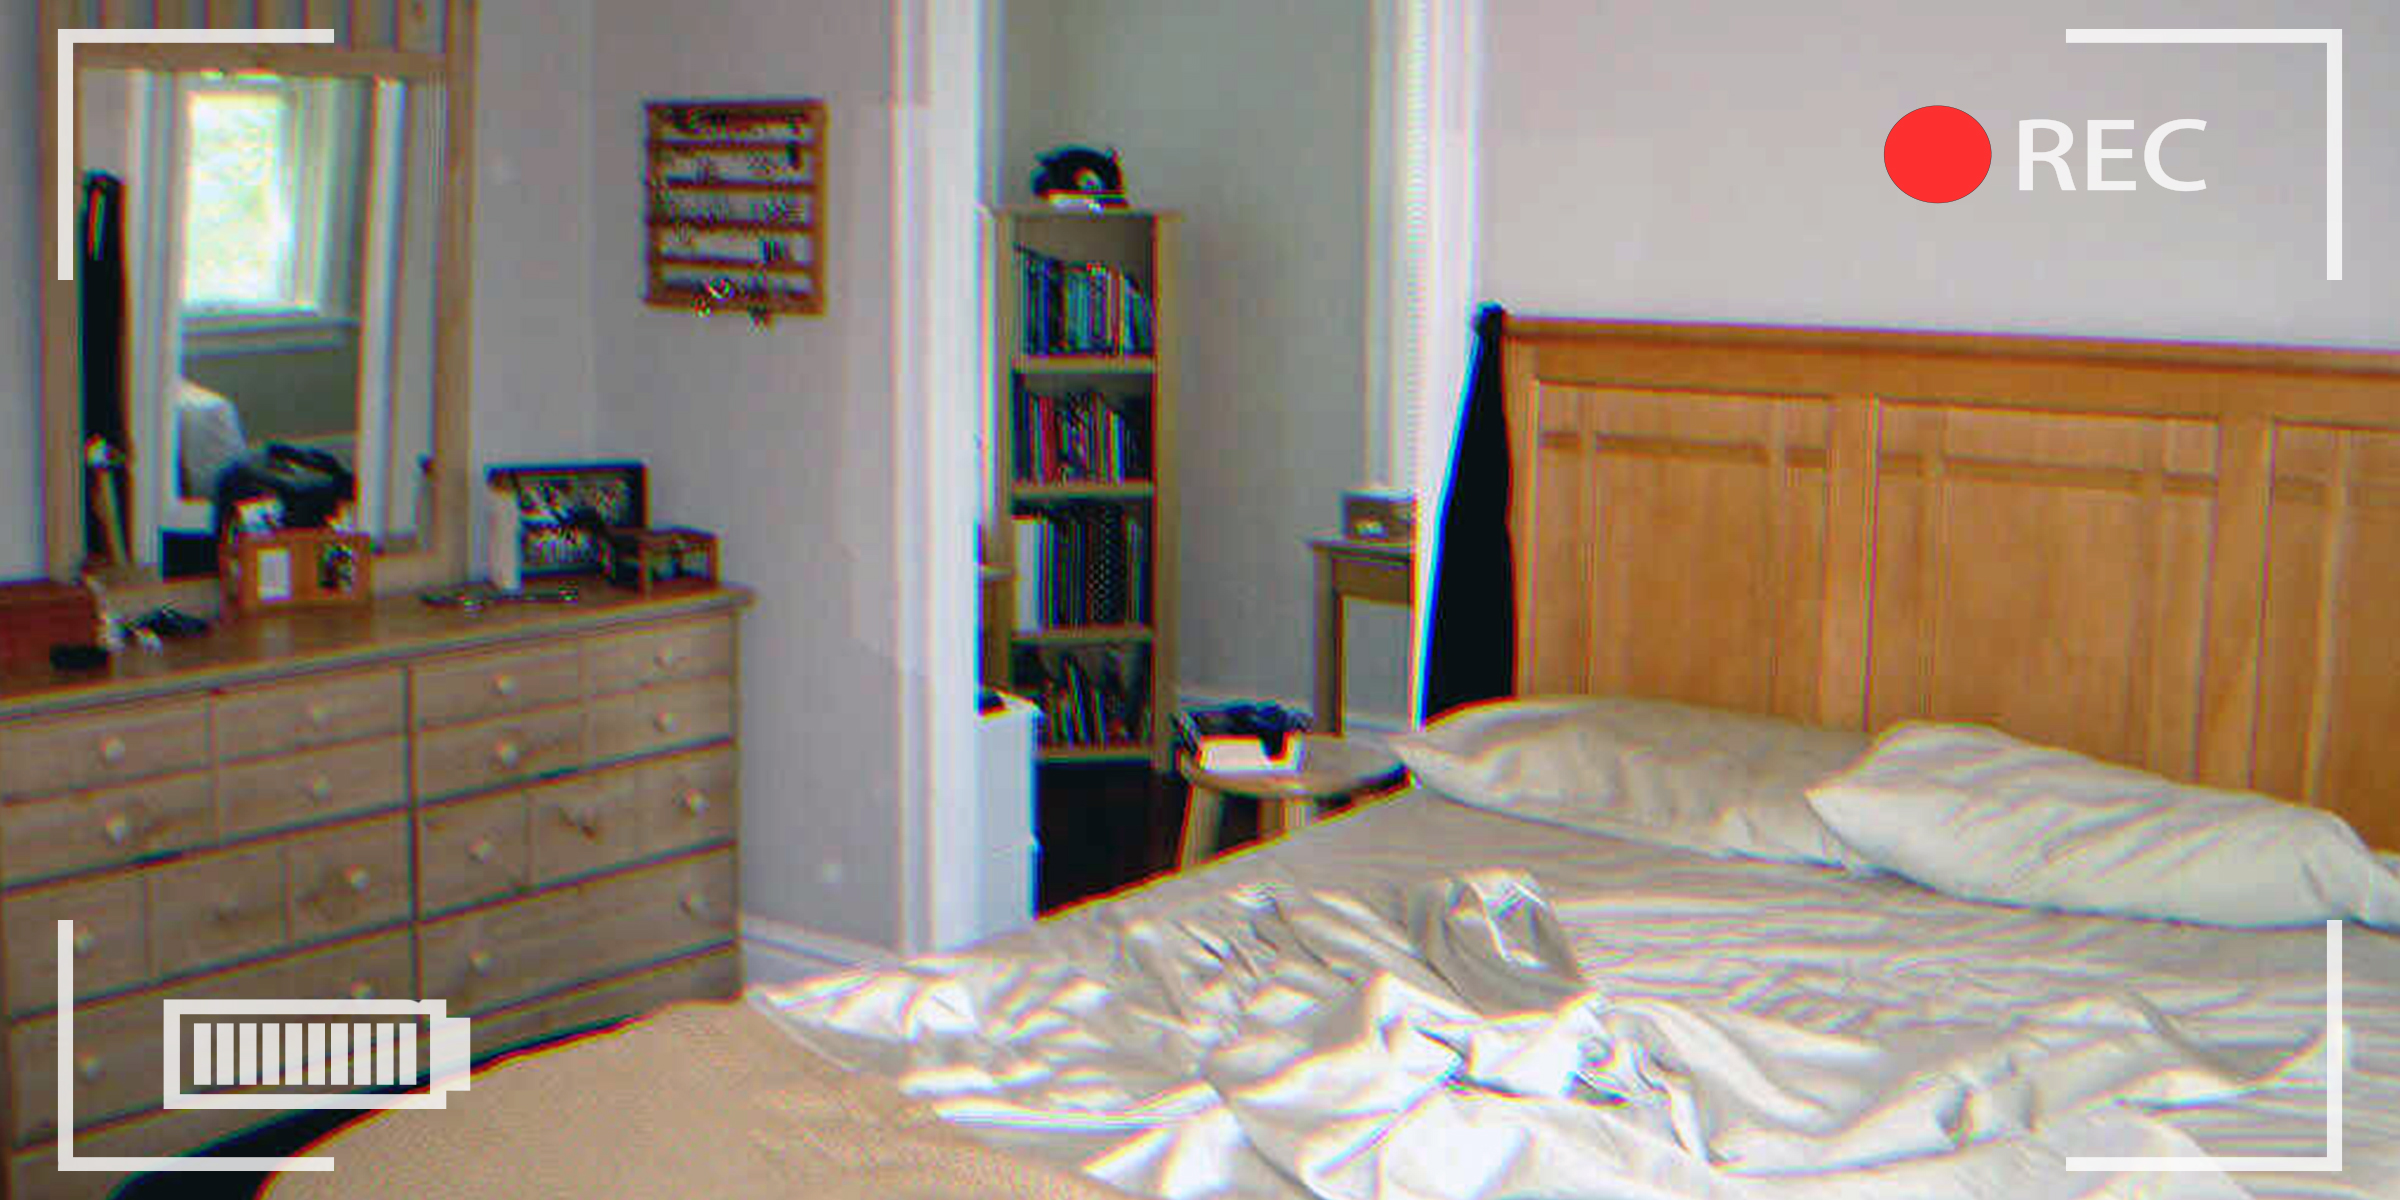 Eine Überwachungskamera in einem Schlafzimmer | Quelle: flickr.com/TFDuesing/CC BY 2.0